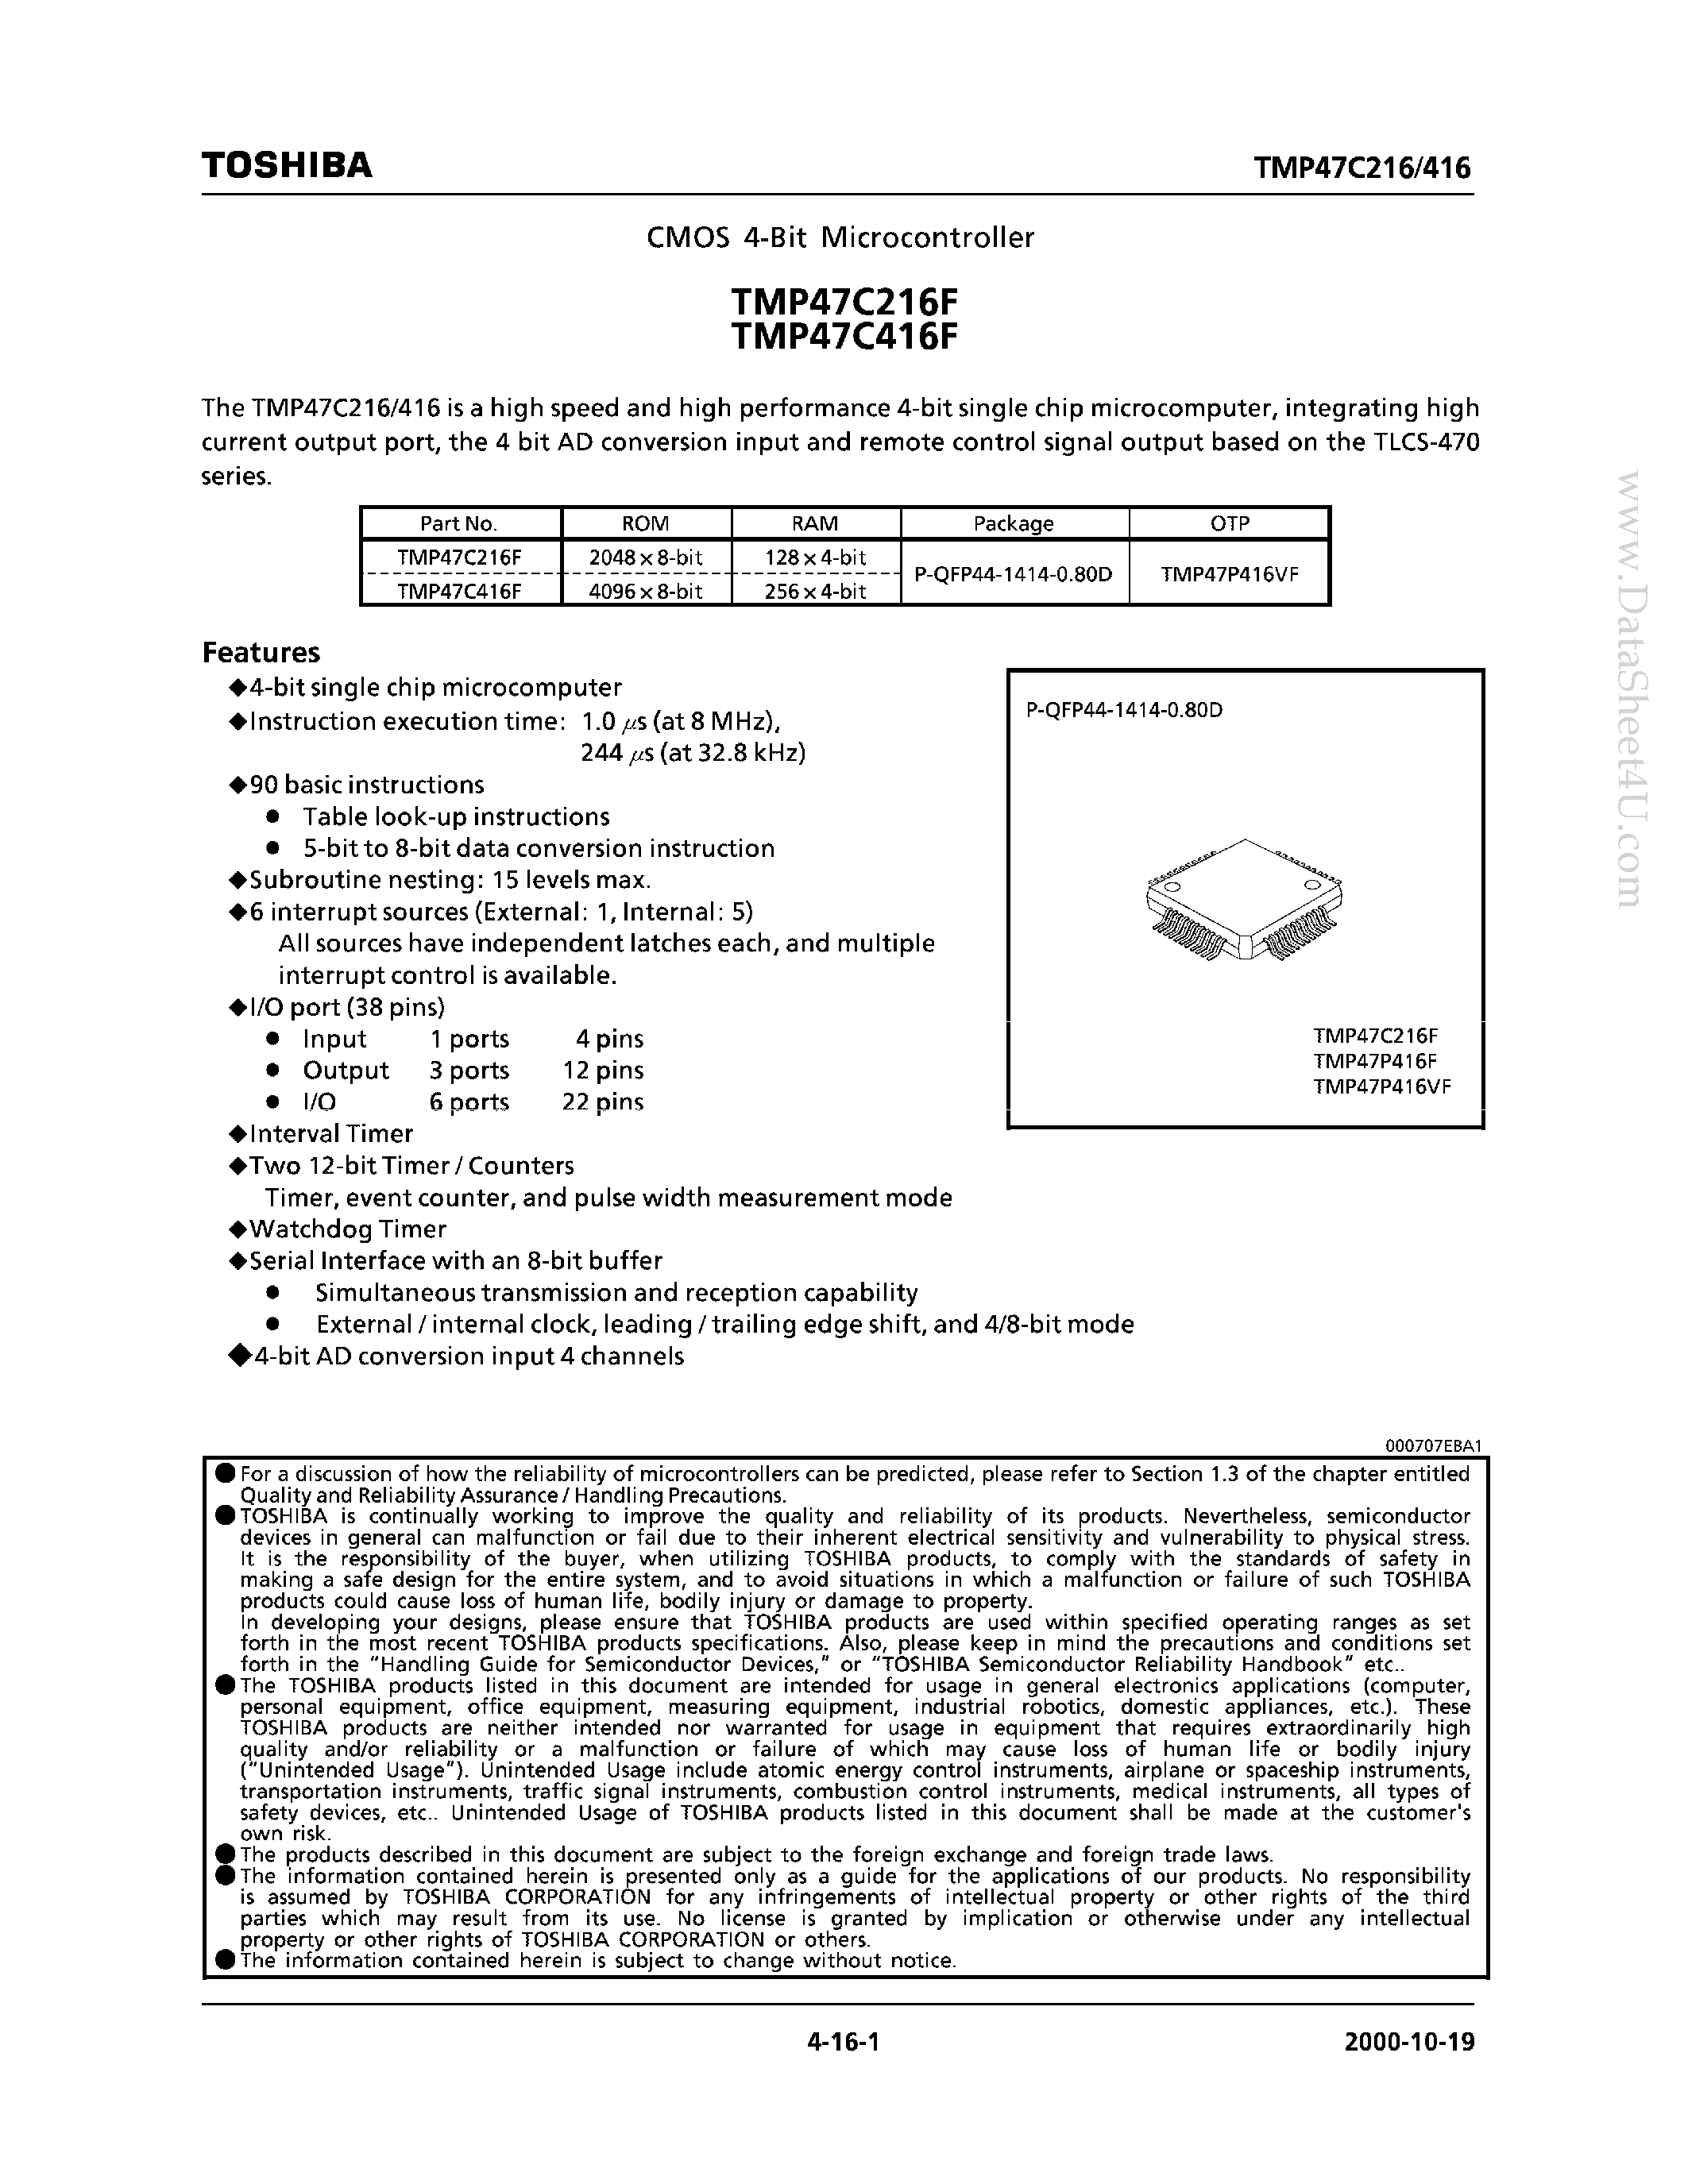 Datasheet TMP47C216F - (TMP47C216F / TMP47C416F) CMOS 4 Bit MCU page 1